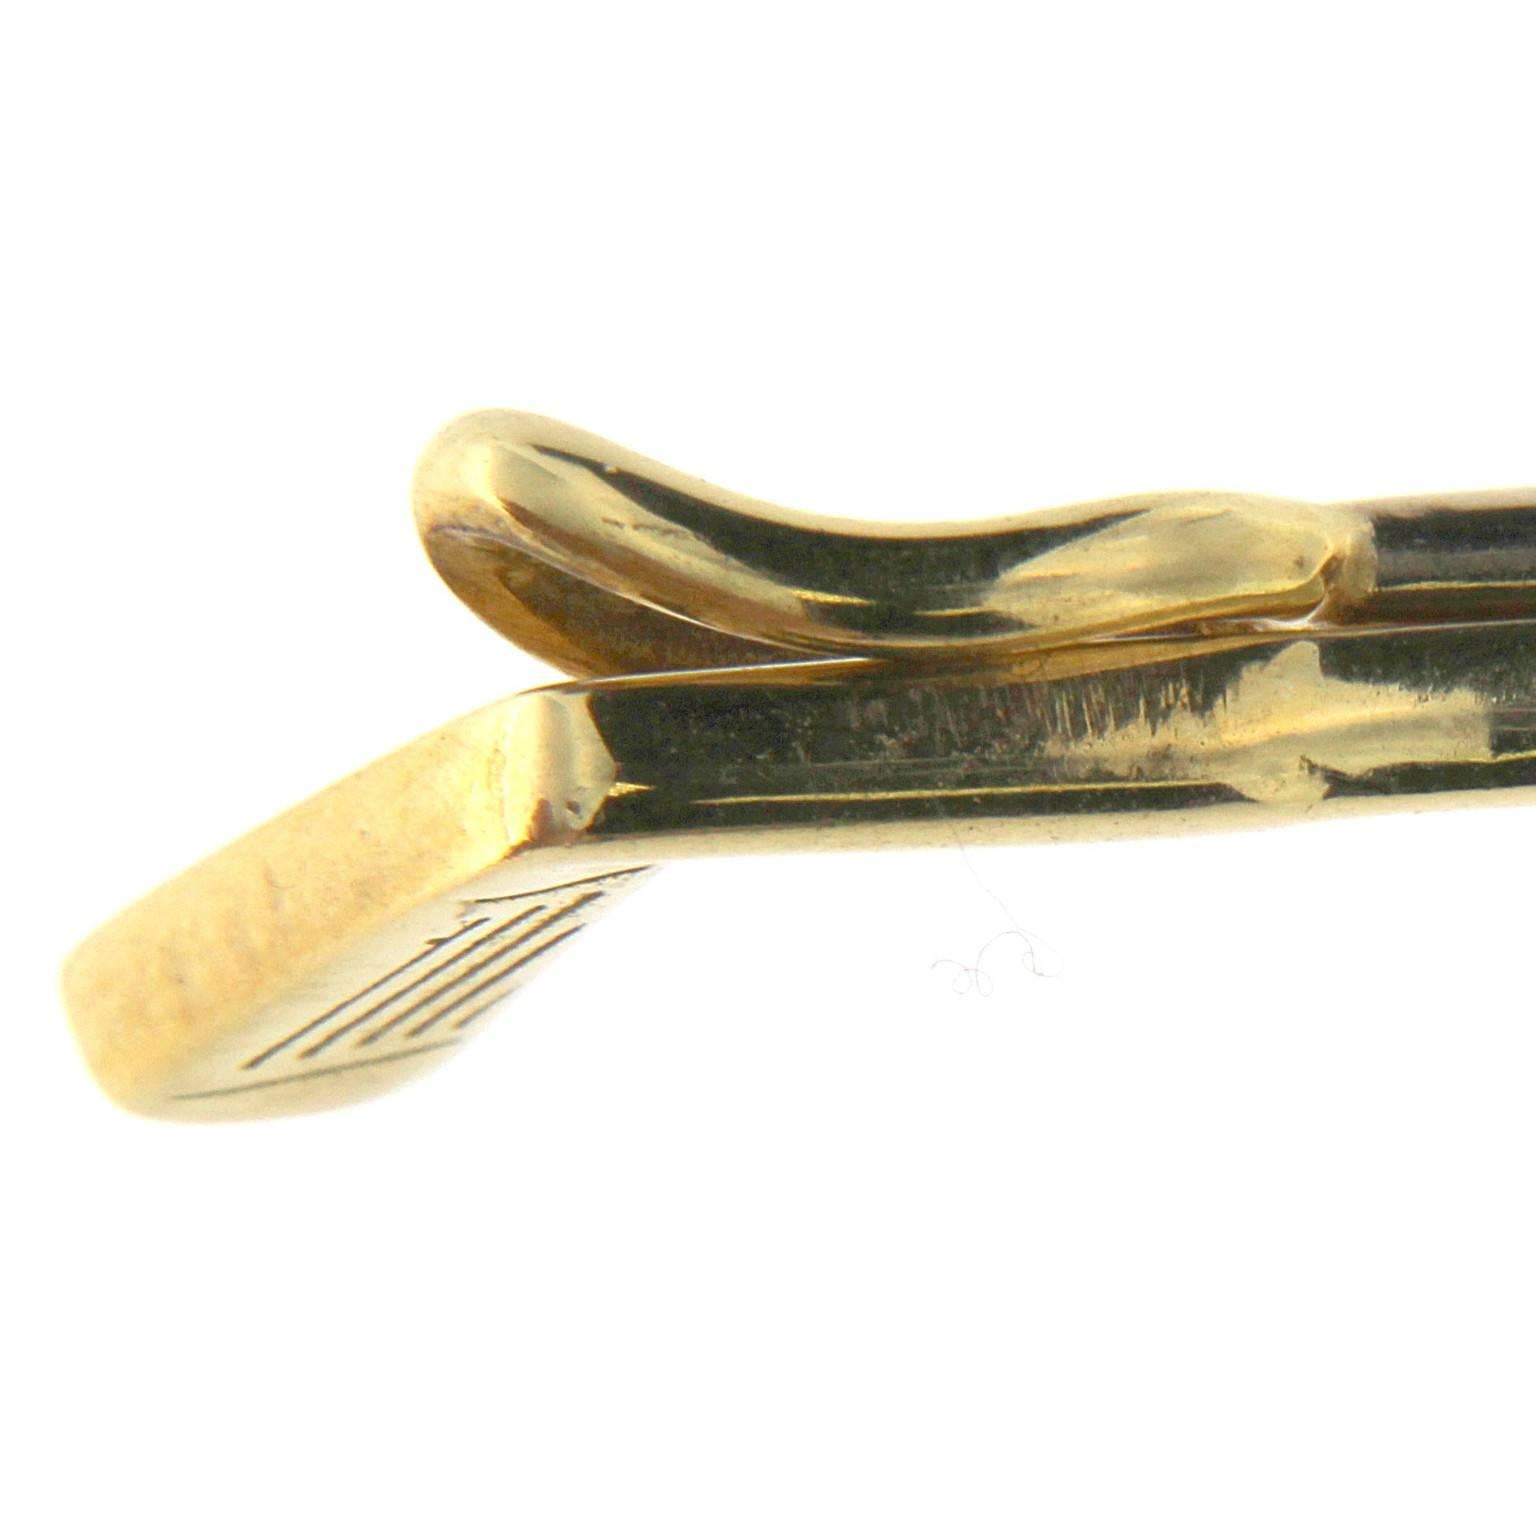 klassische und stilvolle Golfschläger-Krawattenklammer aus 18kt Gold
Gesamtgewicht des Goldes: gr 6,80
Stempel: 10 MI, 750